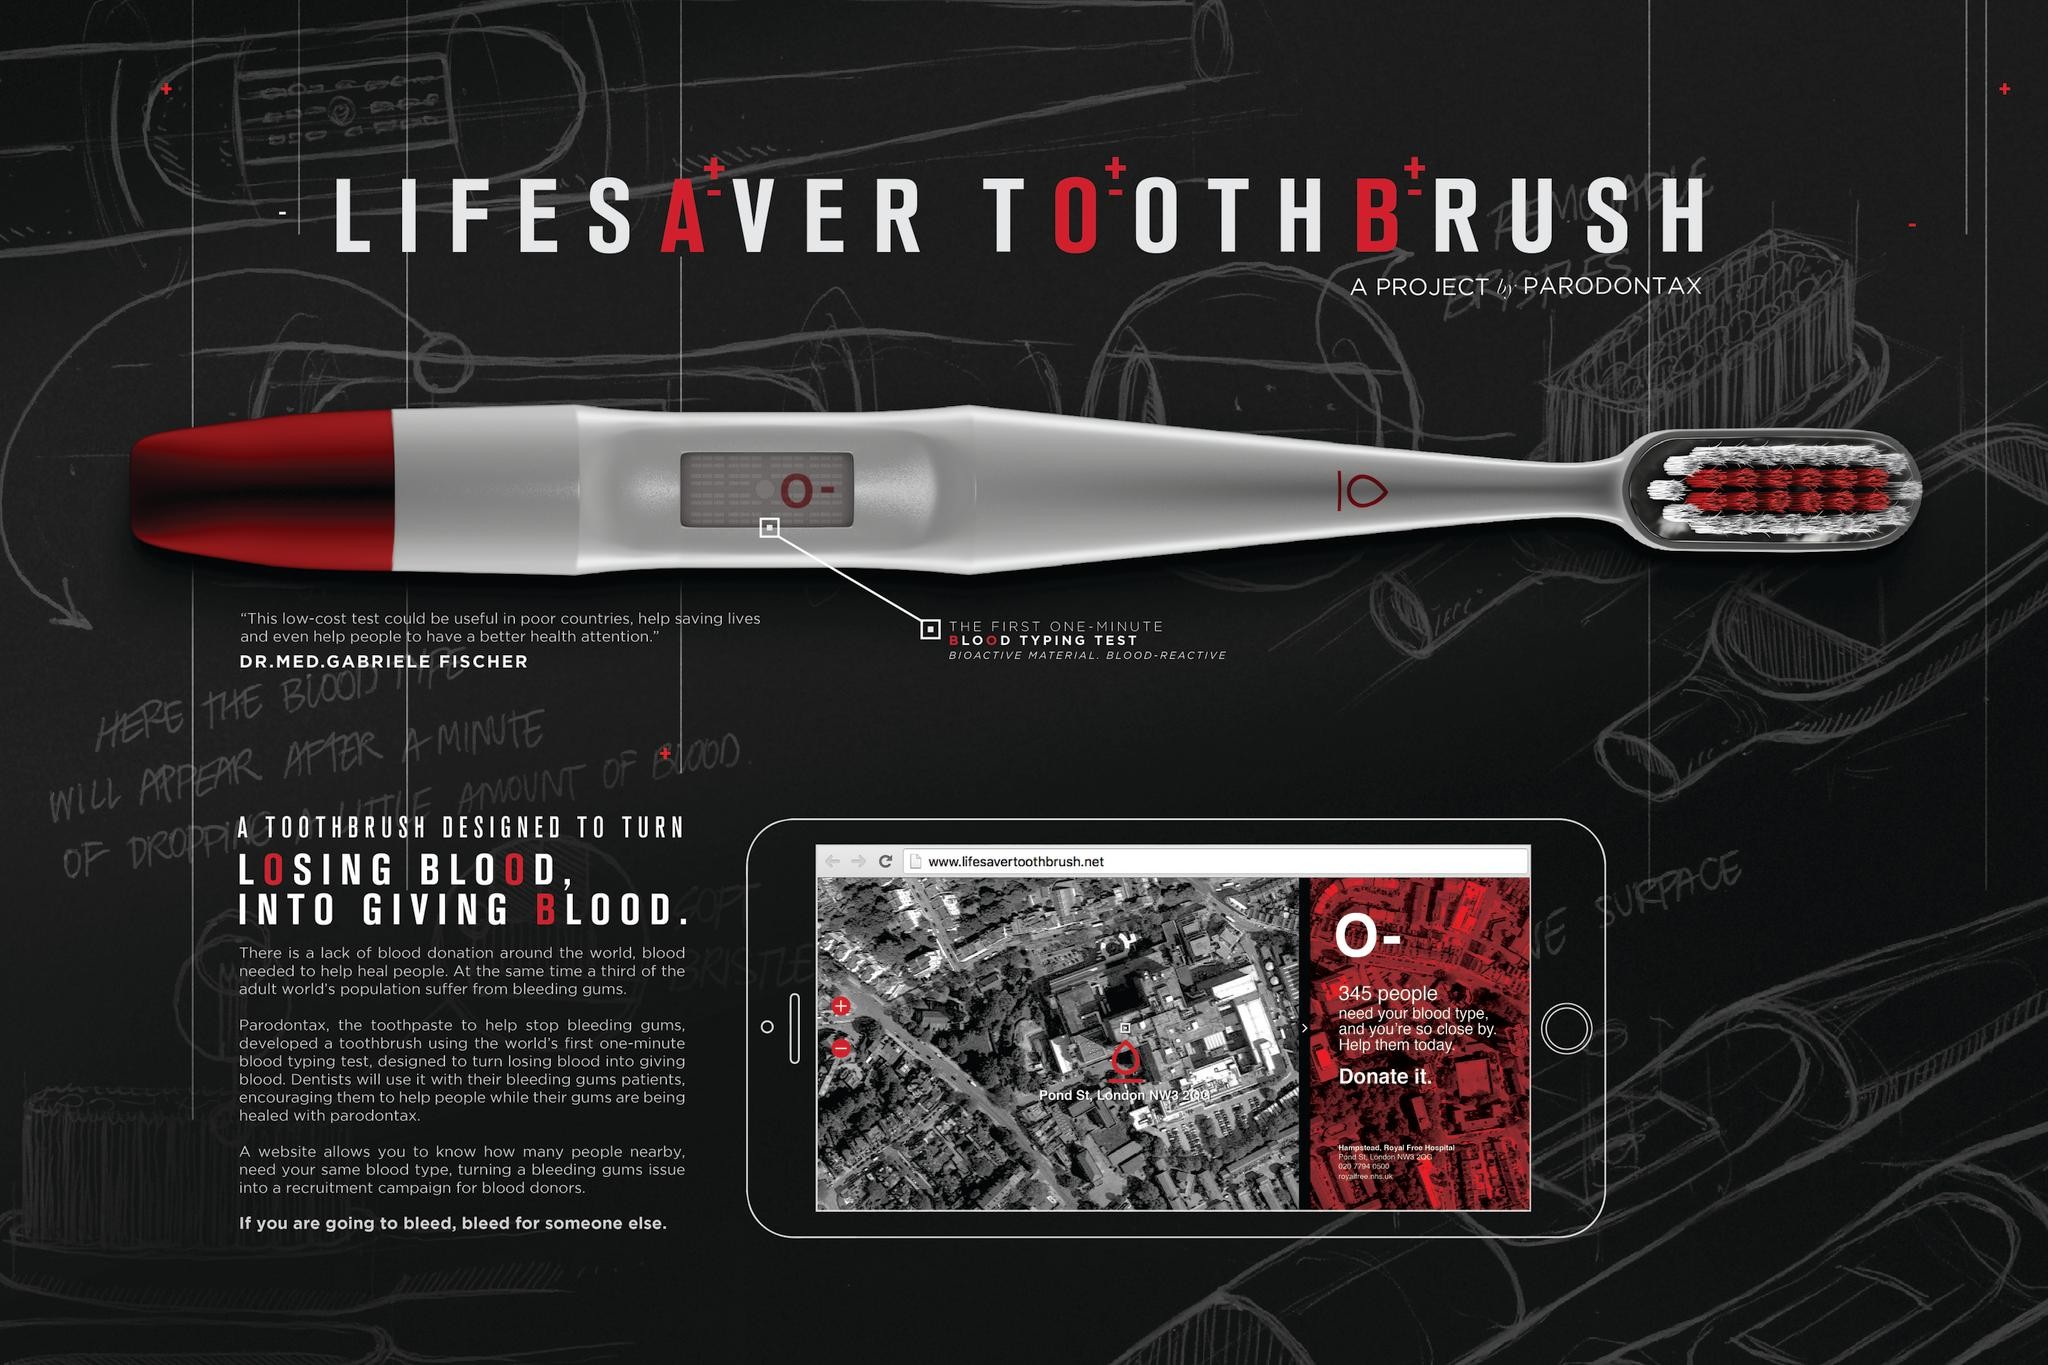 Lifesaving Toothbrush